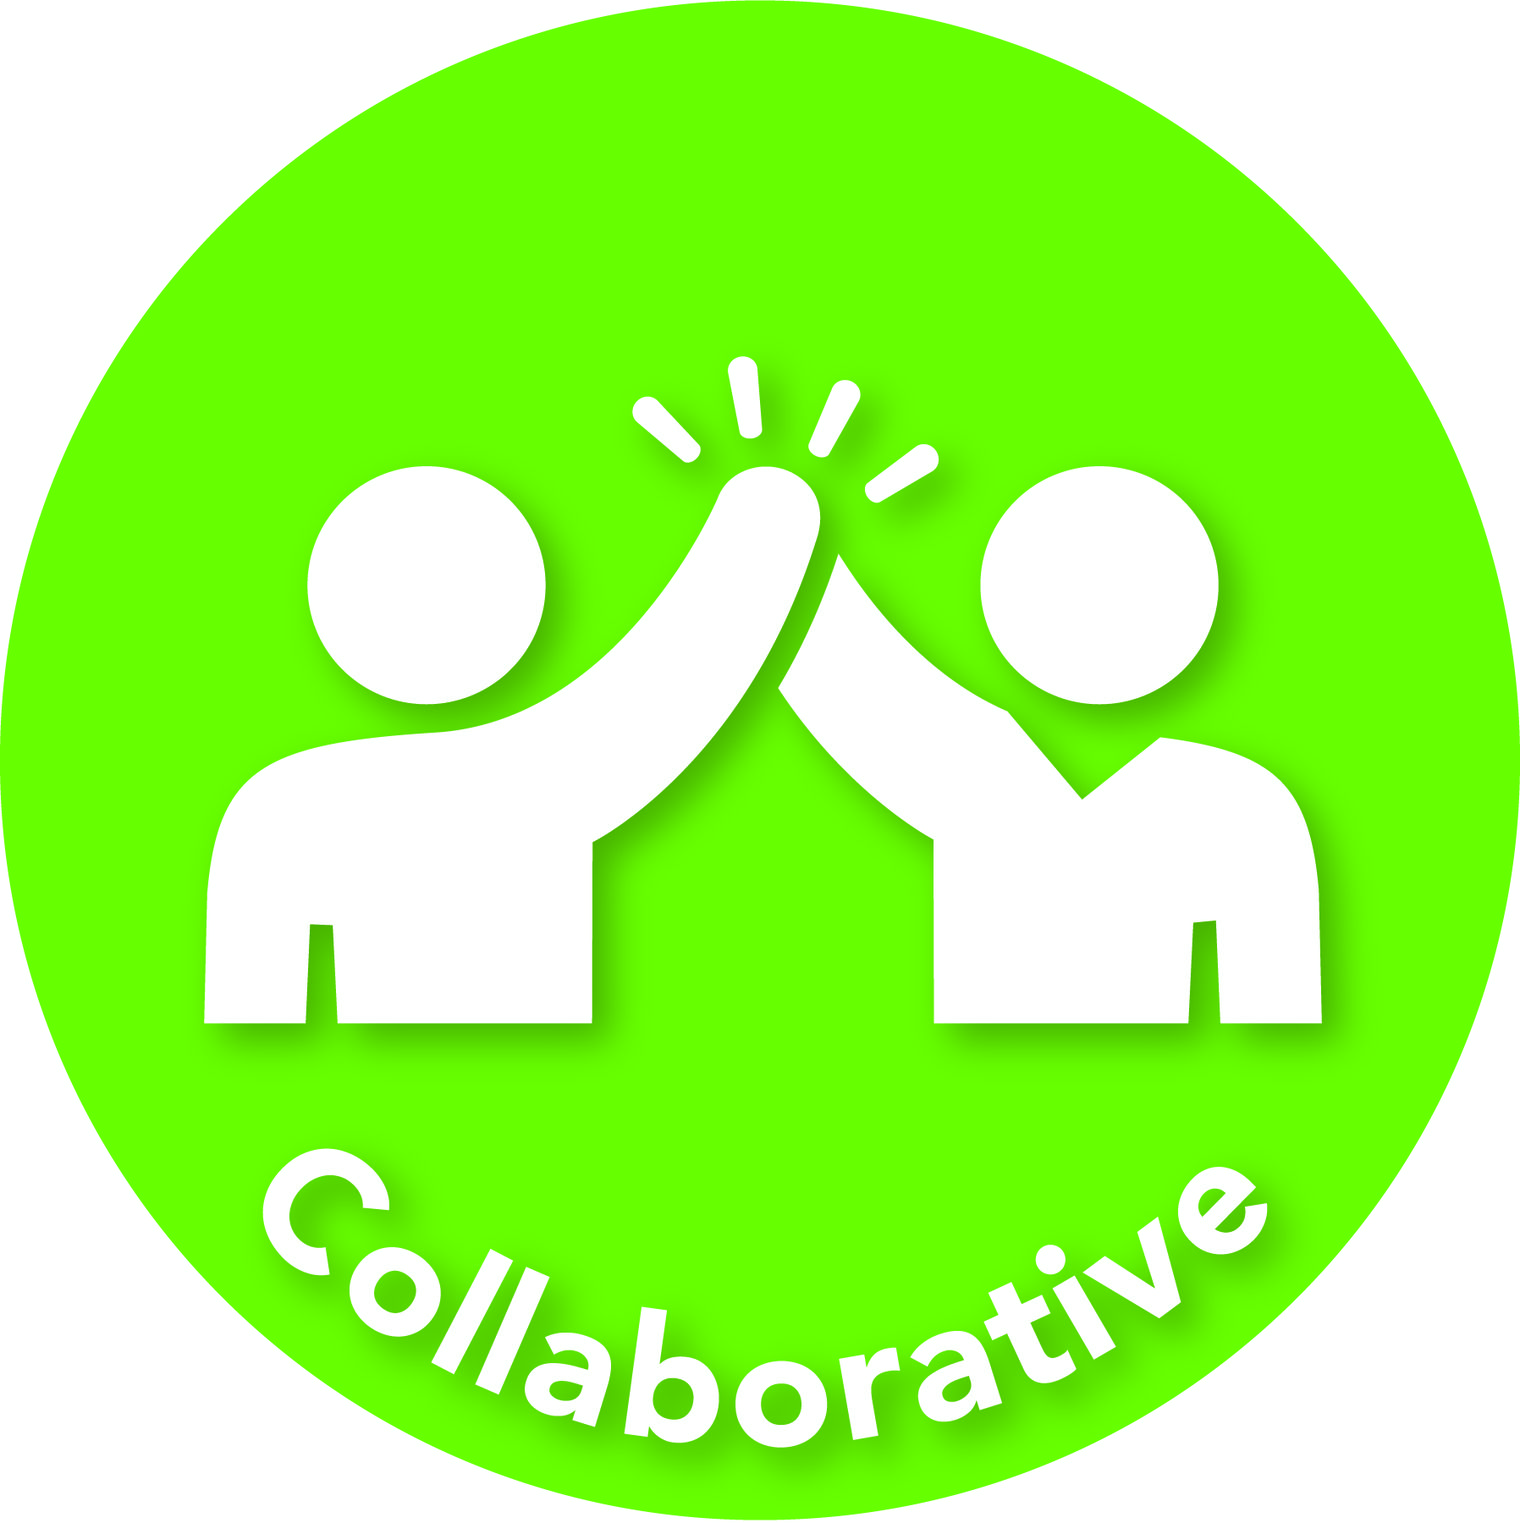 green circle says "collaborative"